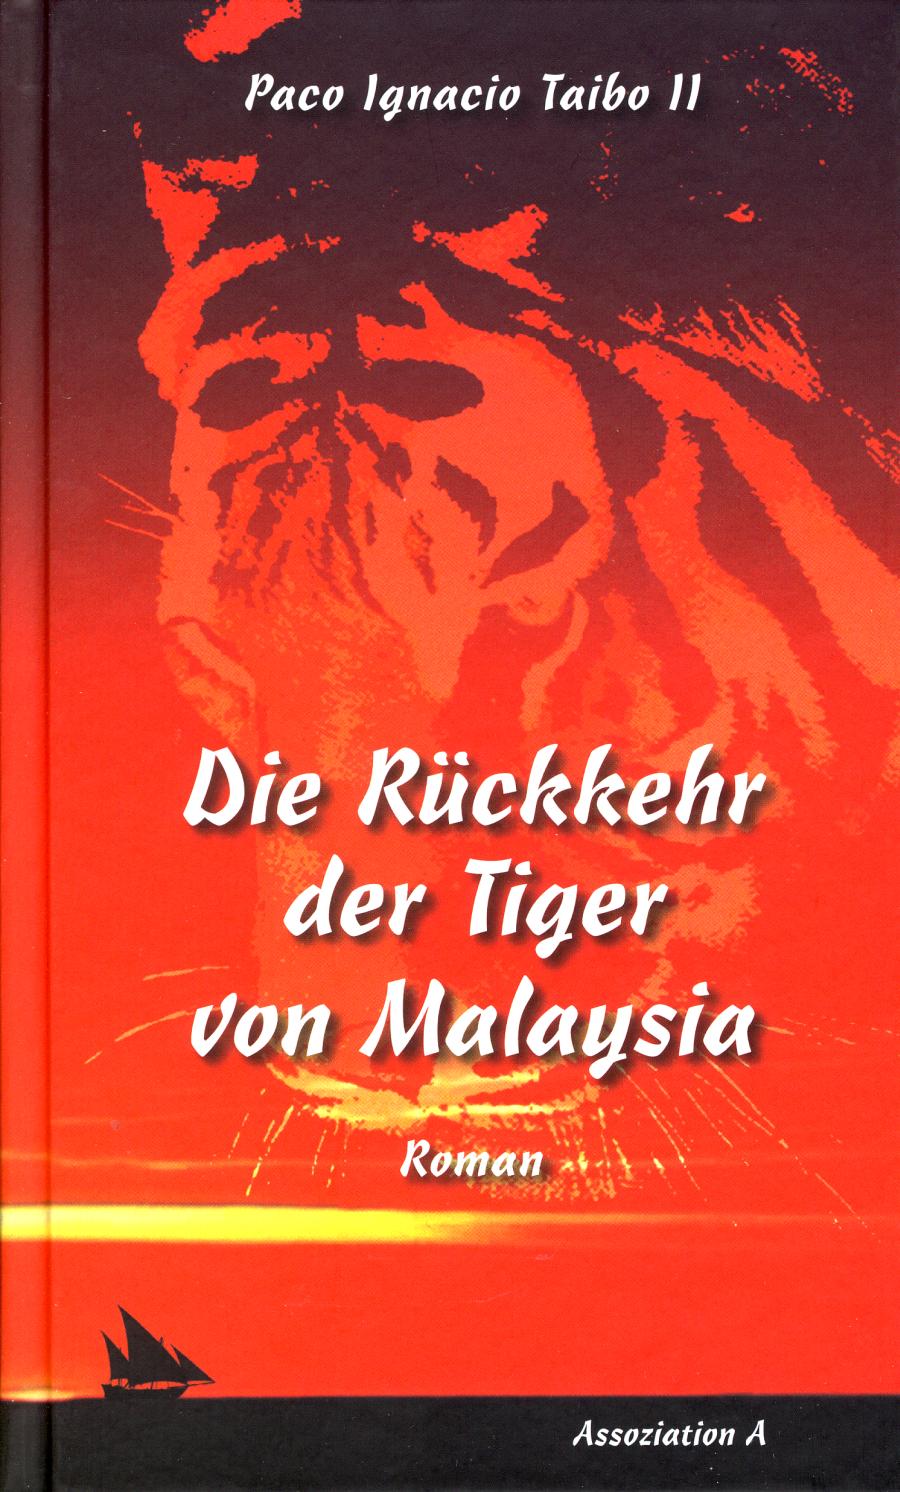 "Die Rckkehr der Tiger von Malaysia"